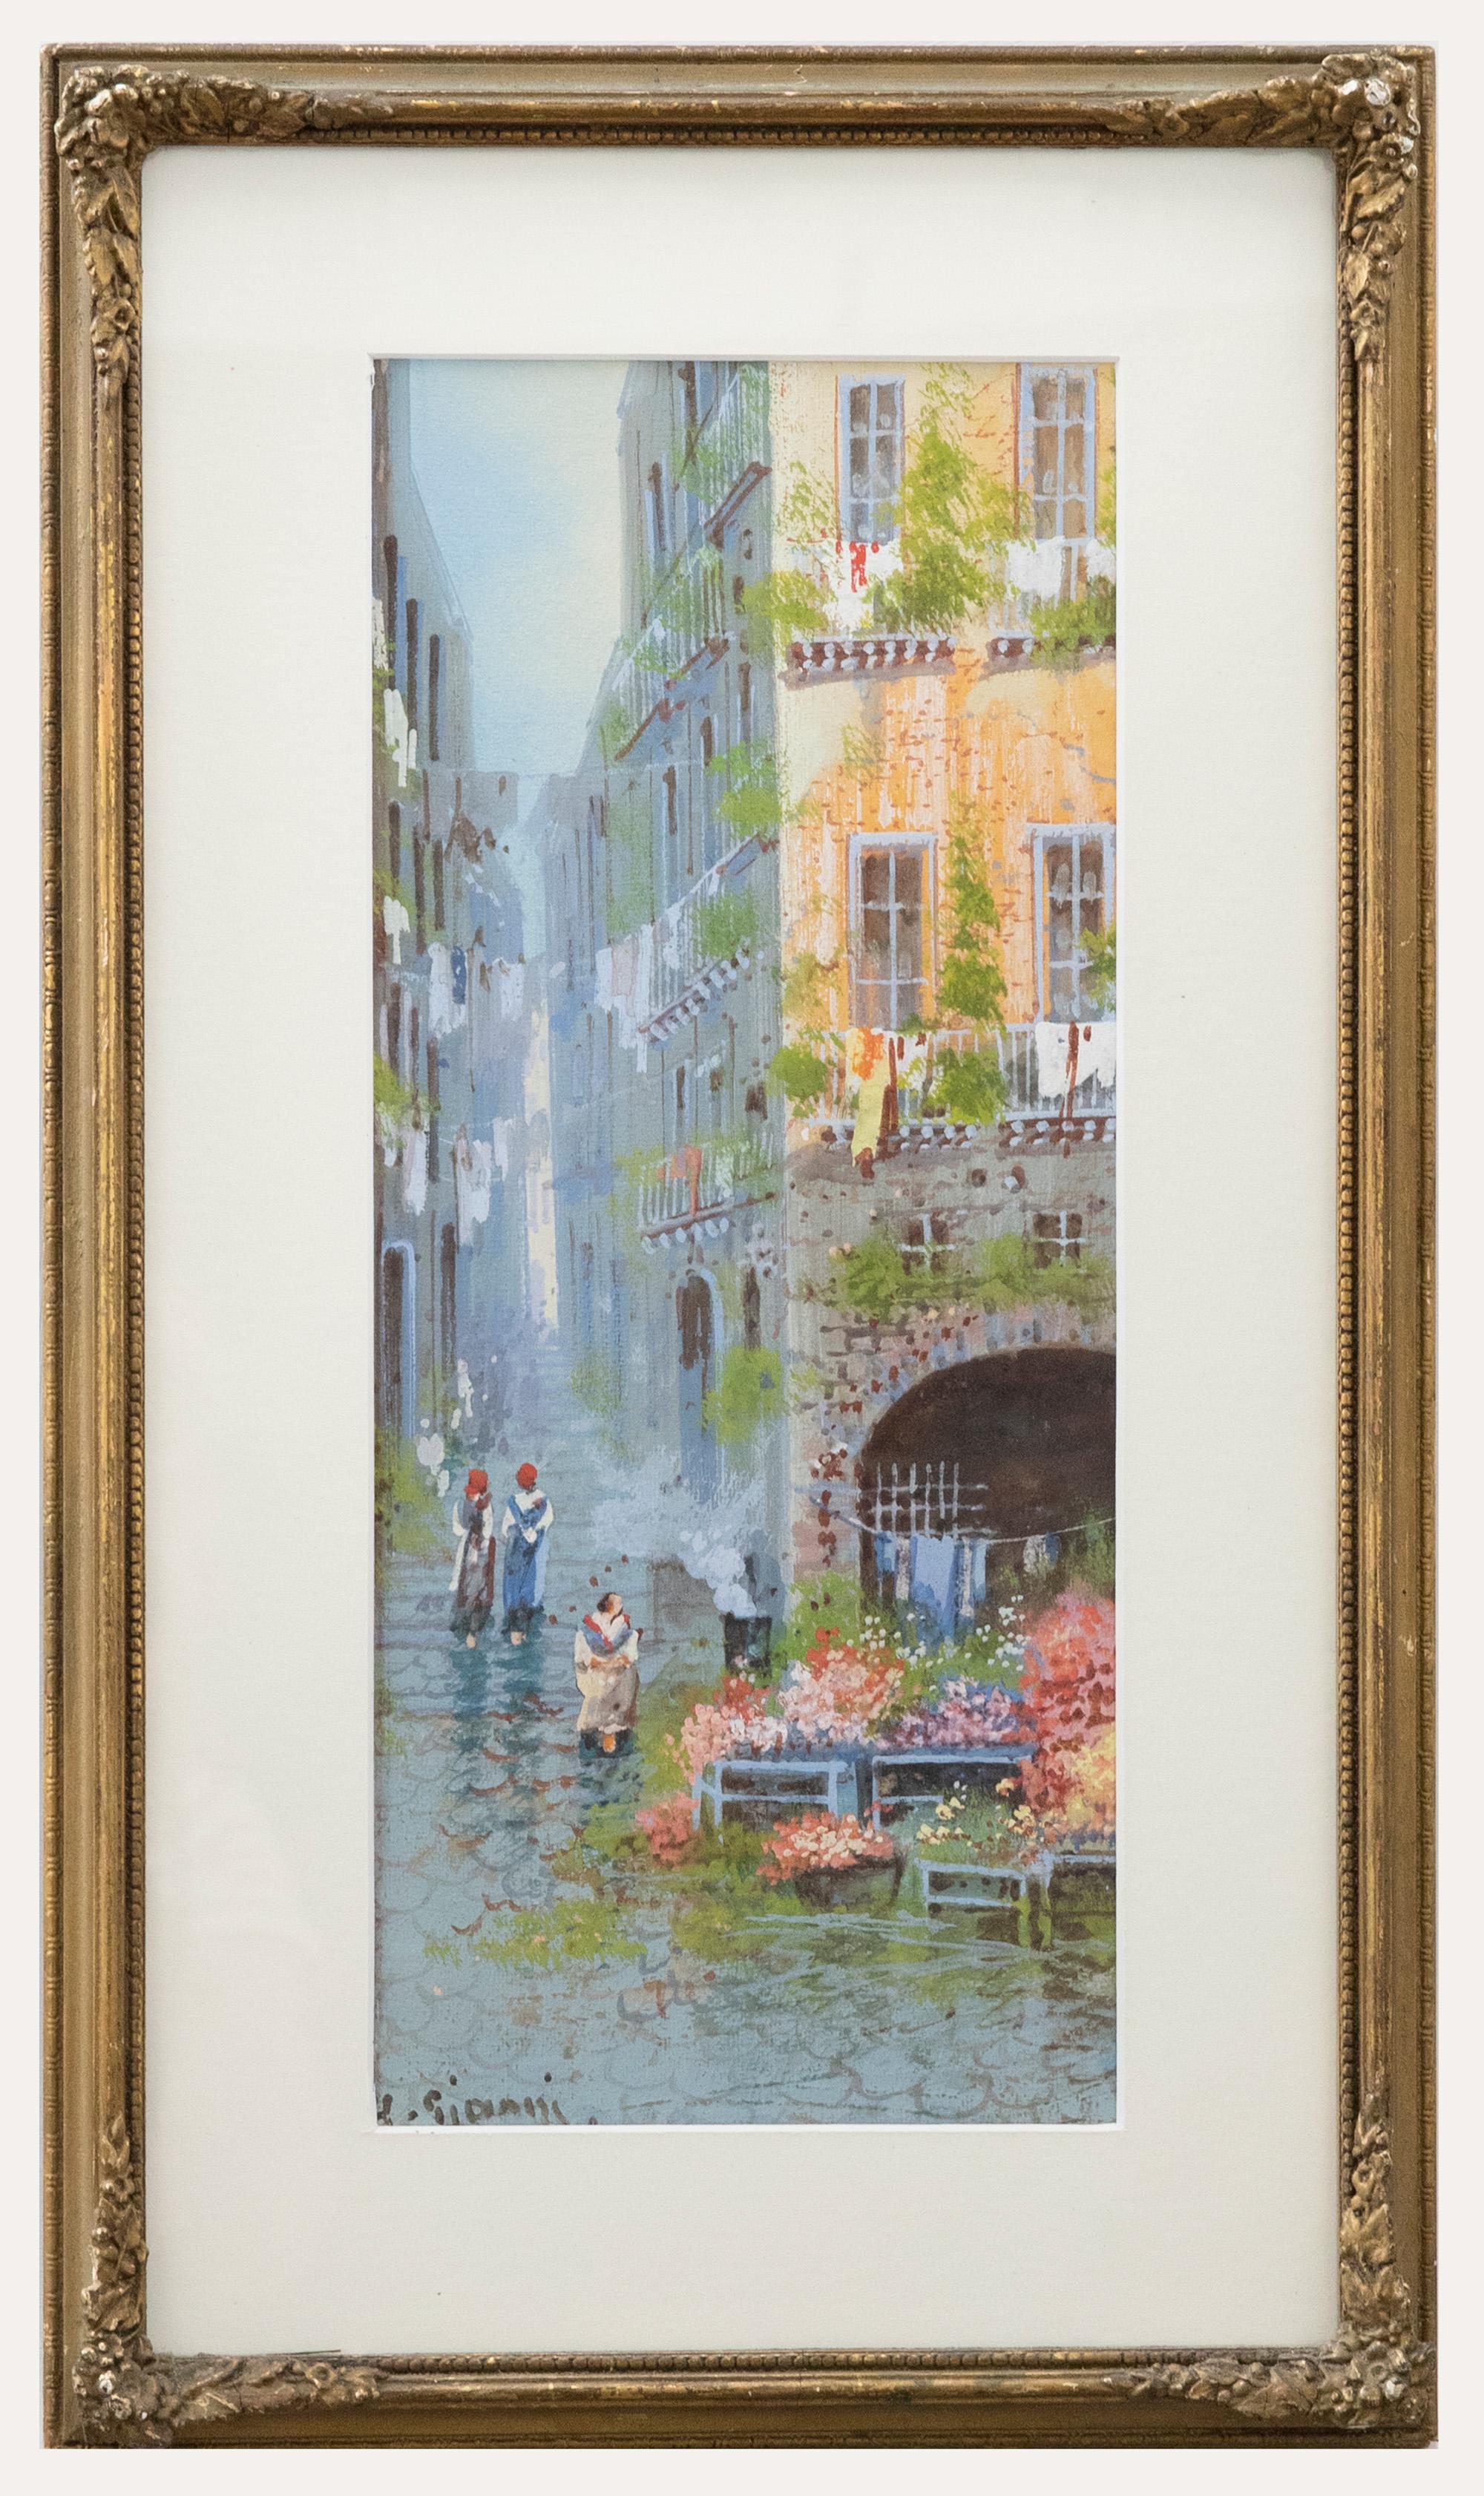  Yves Gianni Landscape Art - Yves Gianni - Framed Early 20th Century Gouache, Venetian Flower Stall